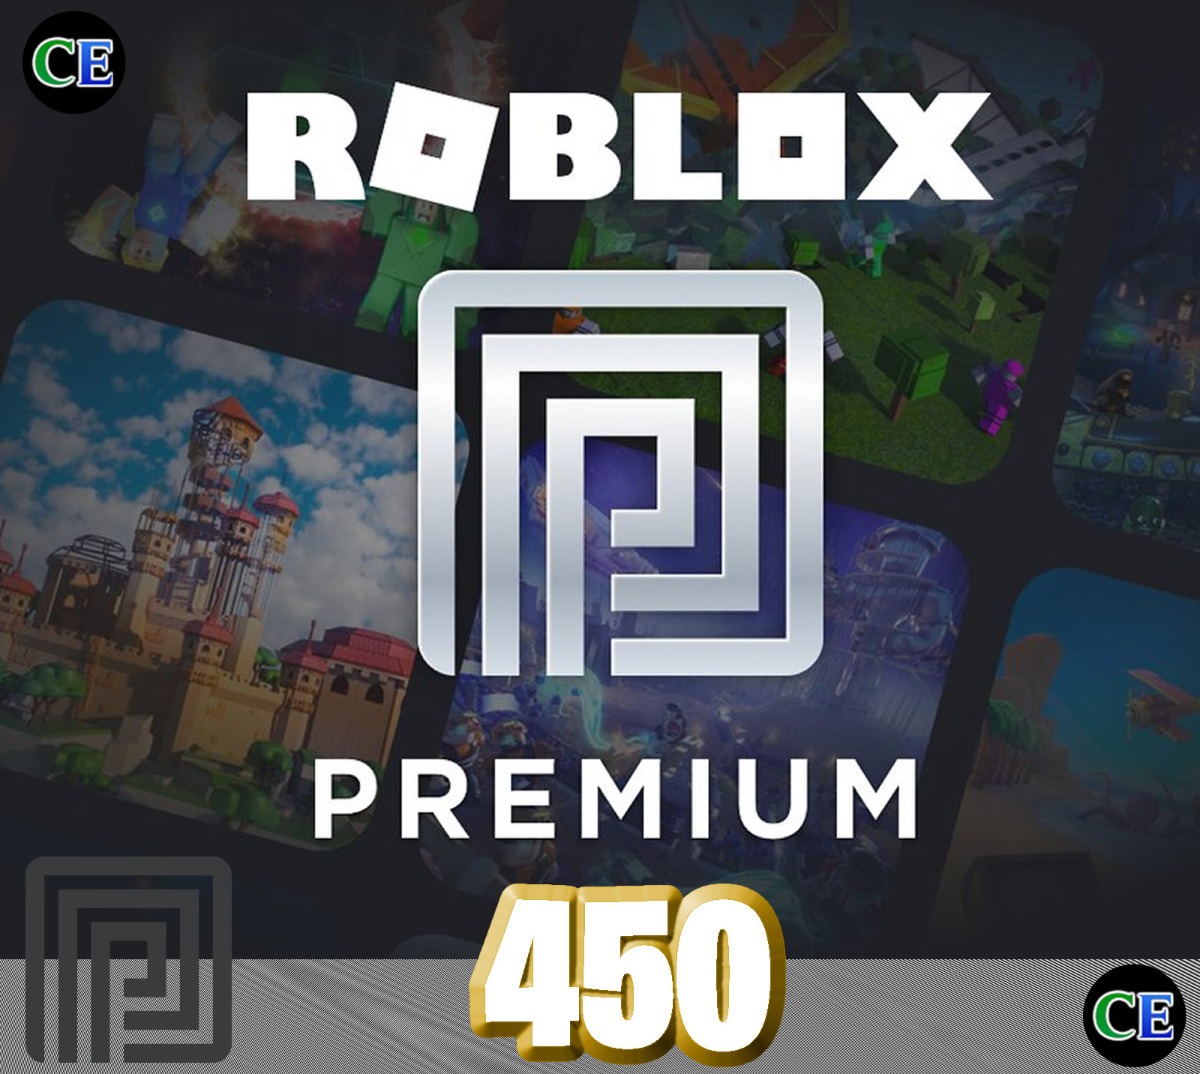 Roblox Premium 450 Robux Mes Entrega Inmediata 740 00 En - roblox ps3 compara precios en tiendas com